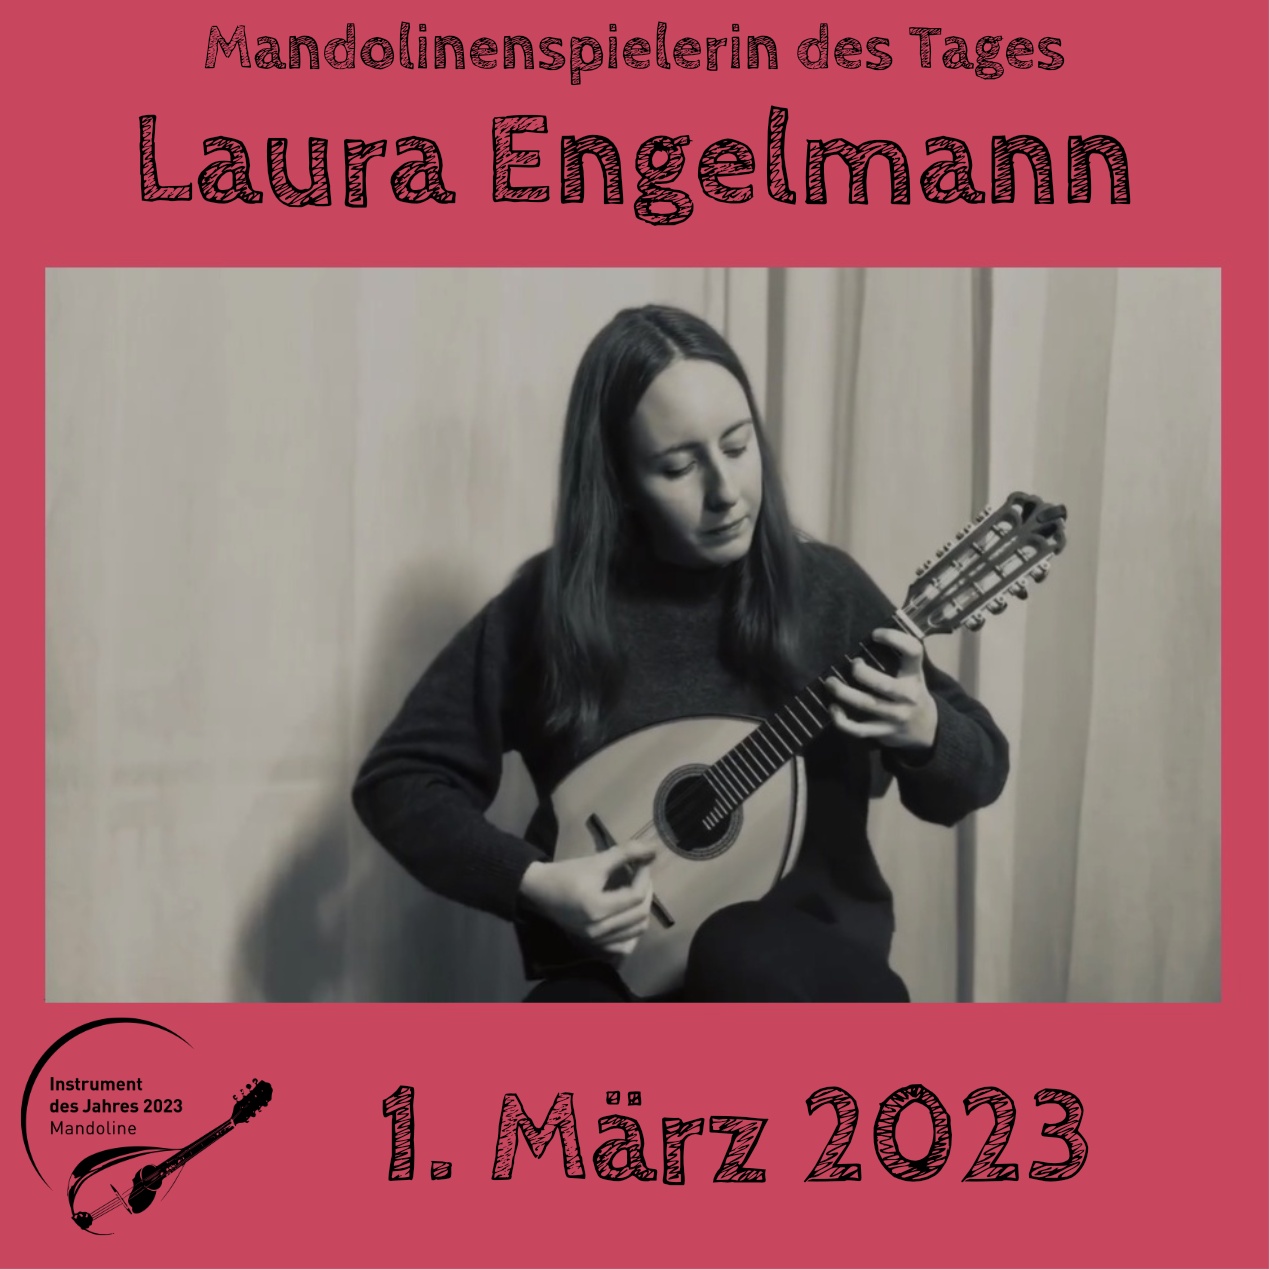 Laura EngelmannMandoline Instrument des Jahres 2023 Mandolinenspielerin des Tages